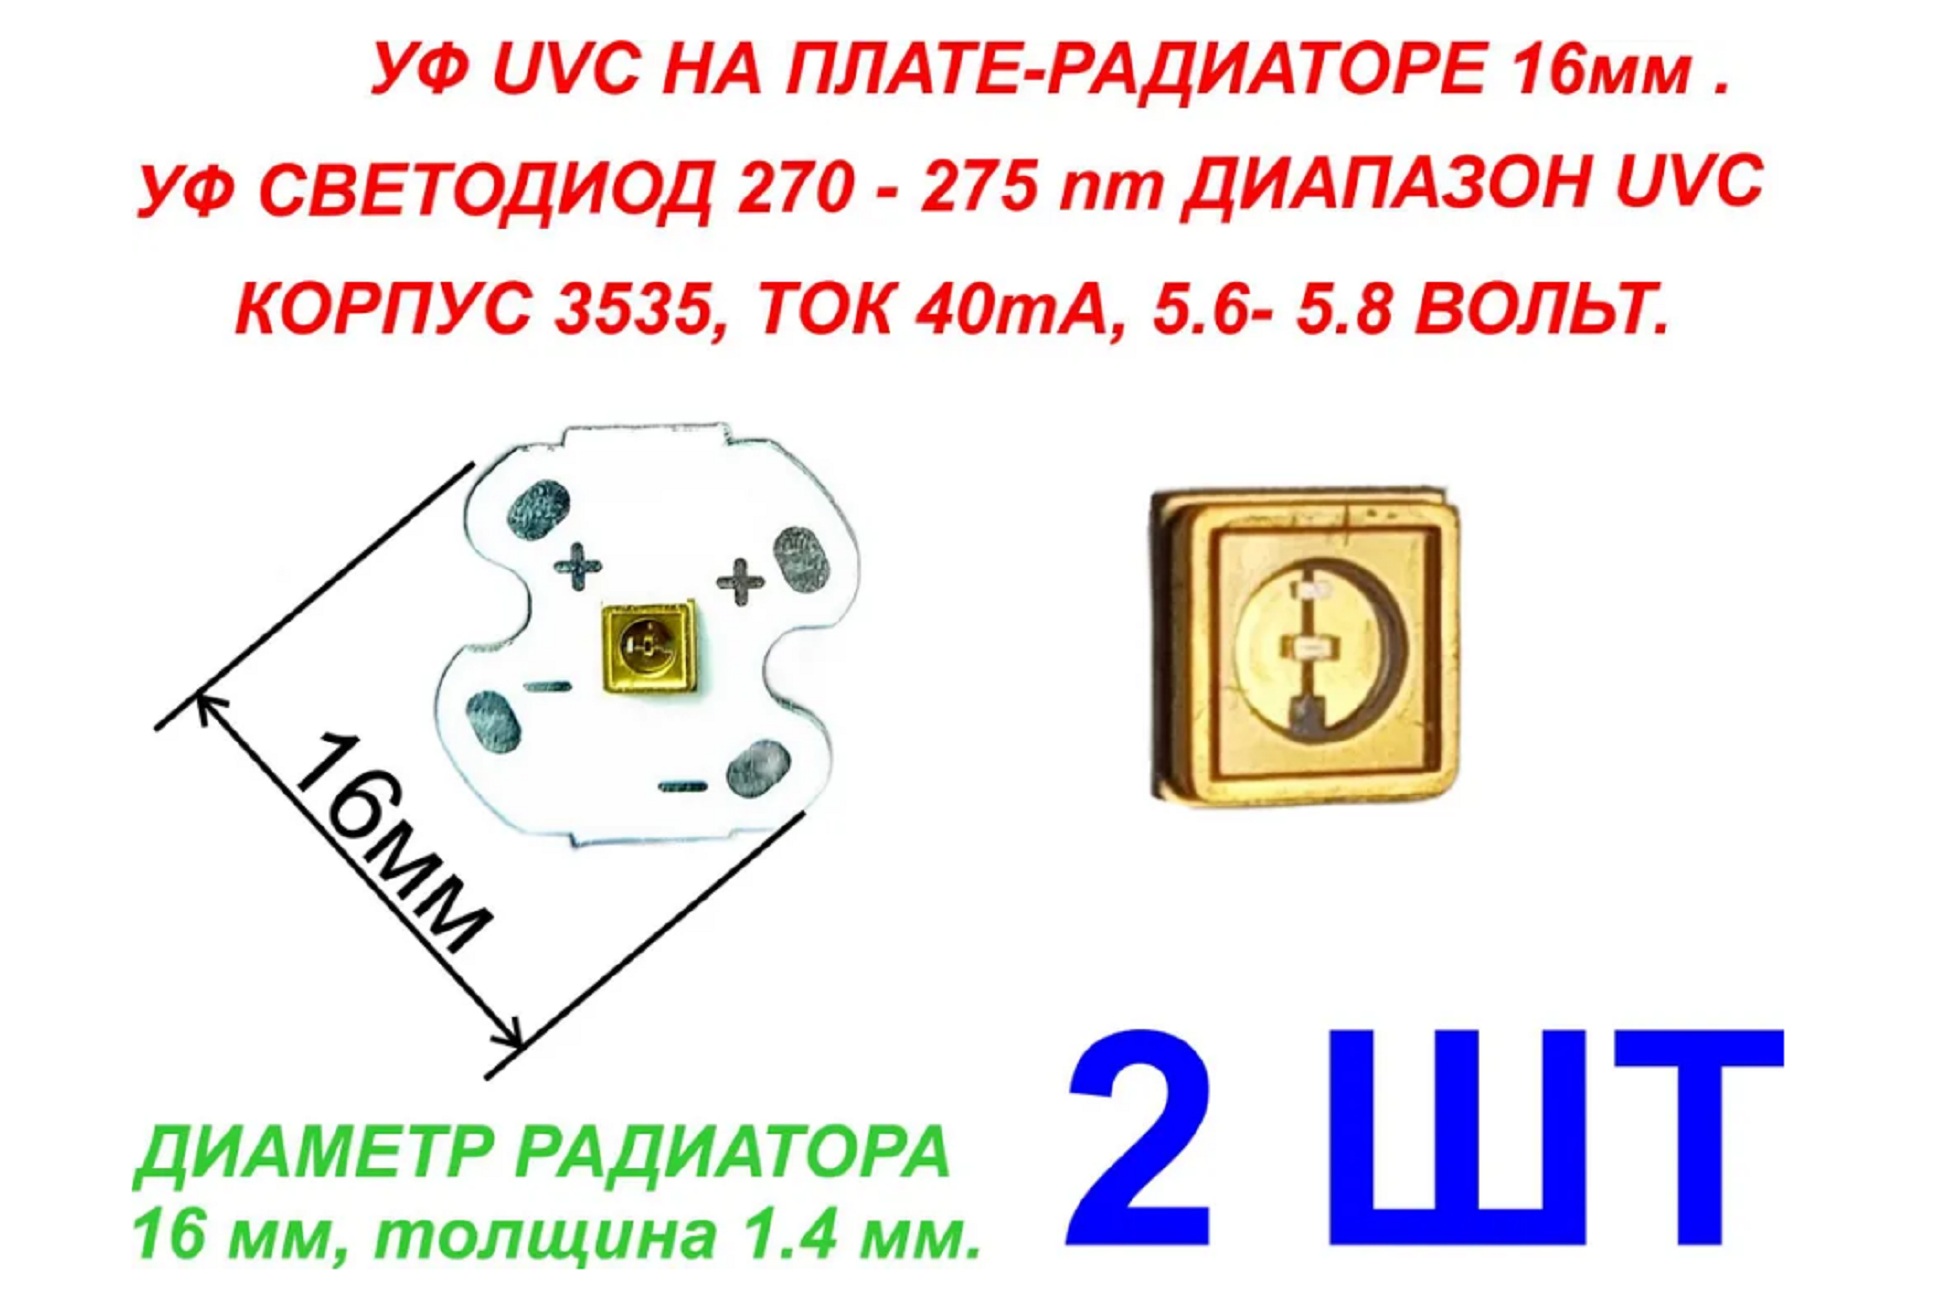 Светодиоды ЗВЕЗДА 2 шт. На радиаторе ультрафиолетовые LED UVC 5.6-5.8В 40ma 270-275nm